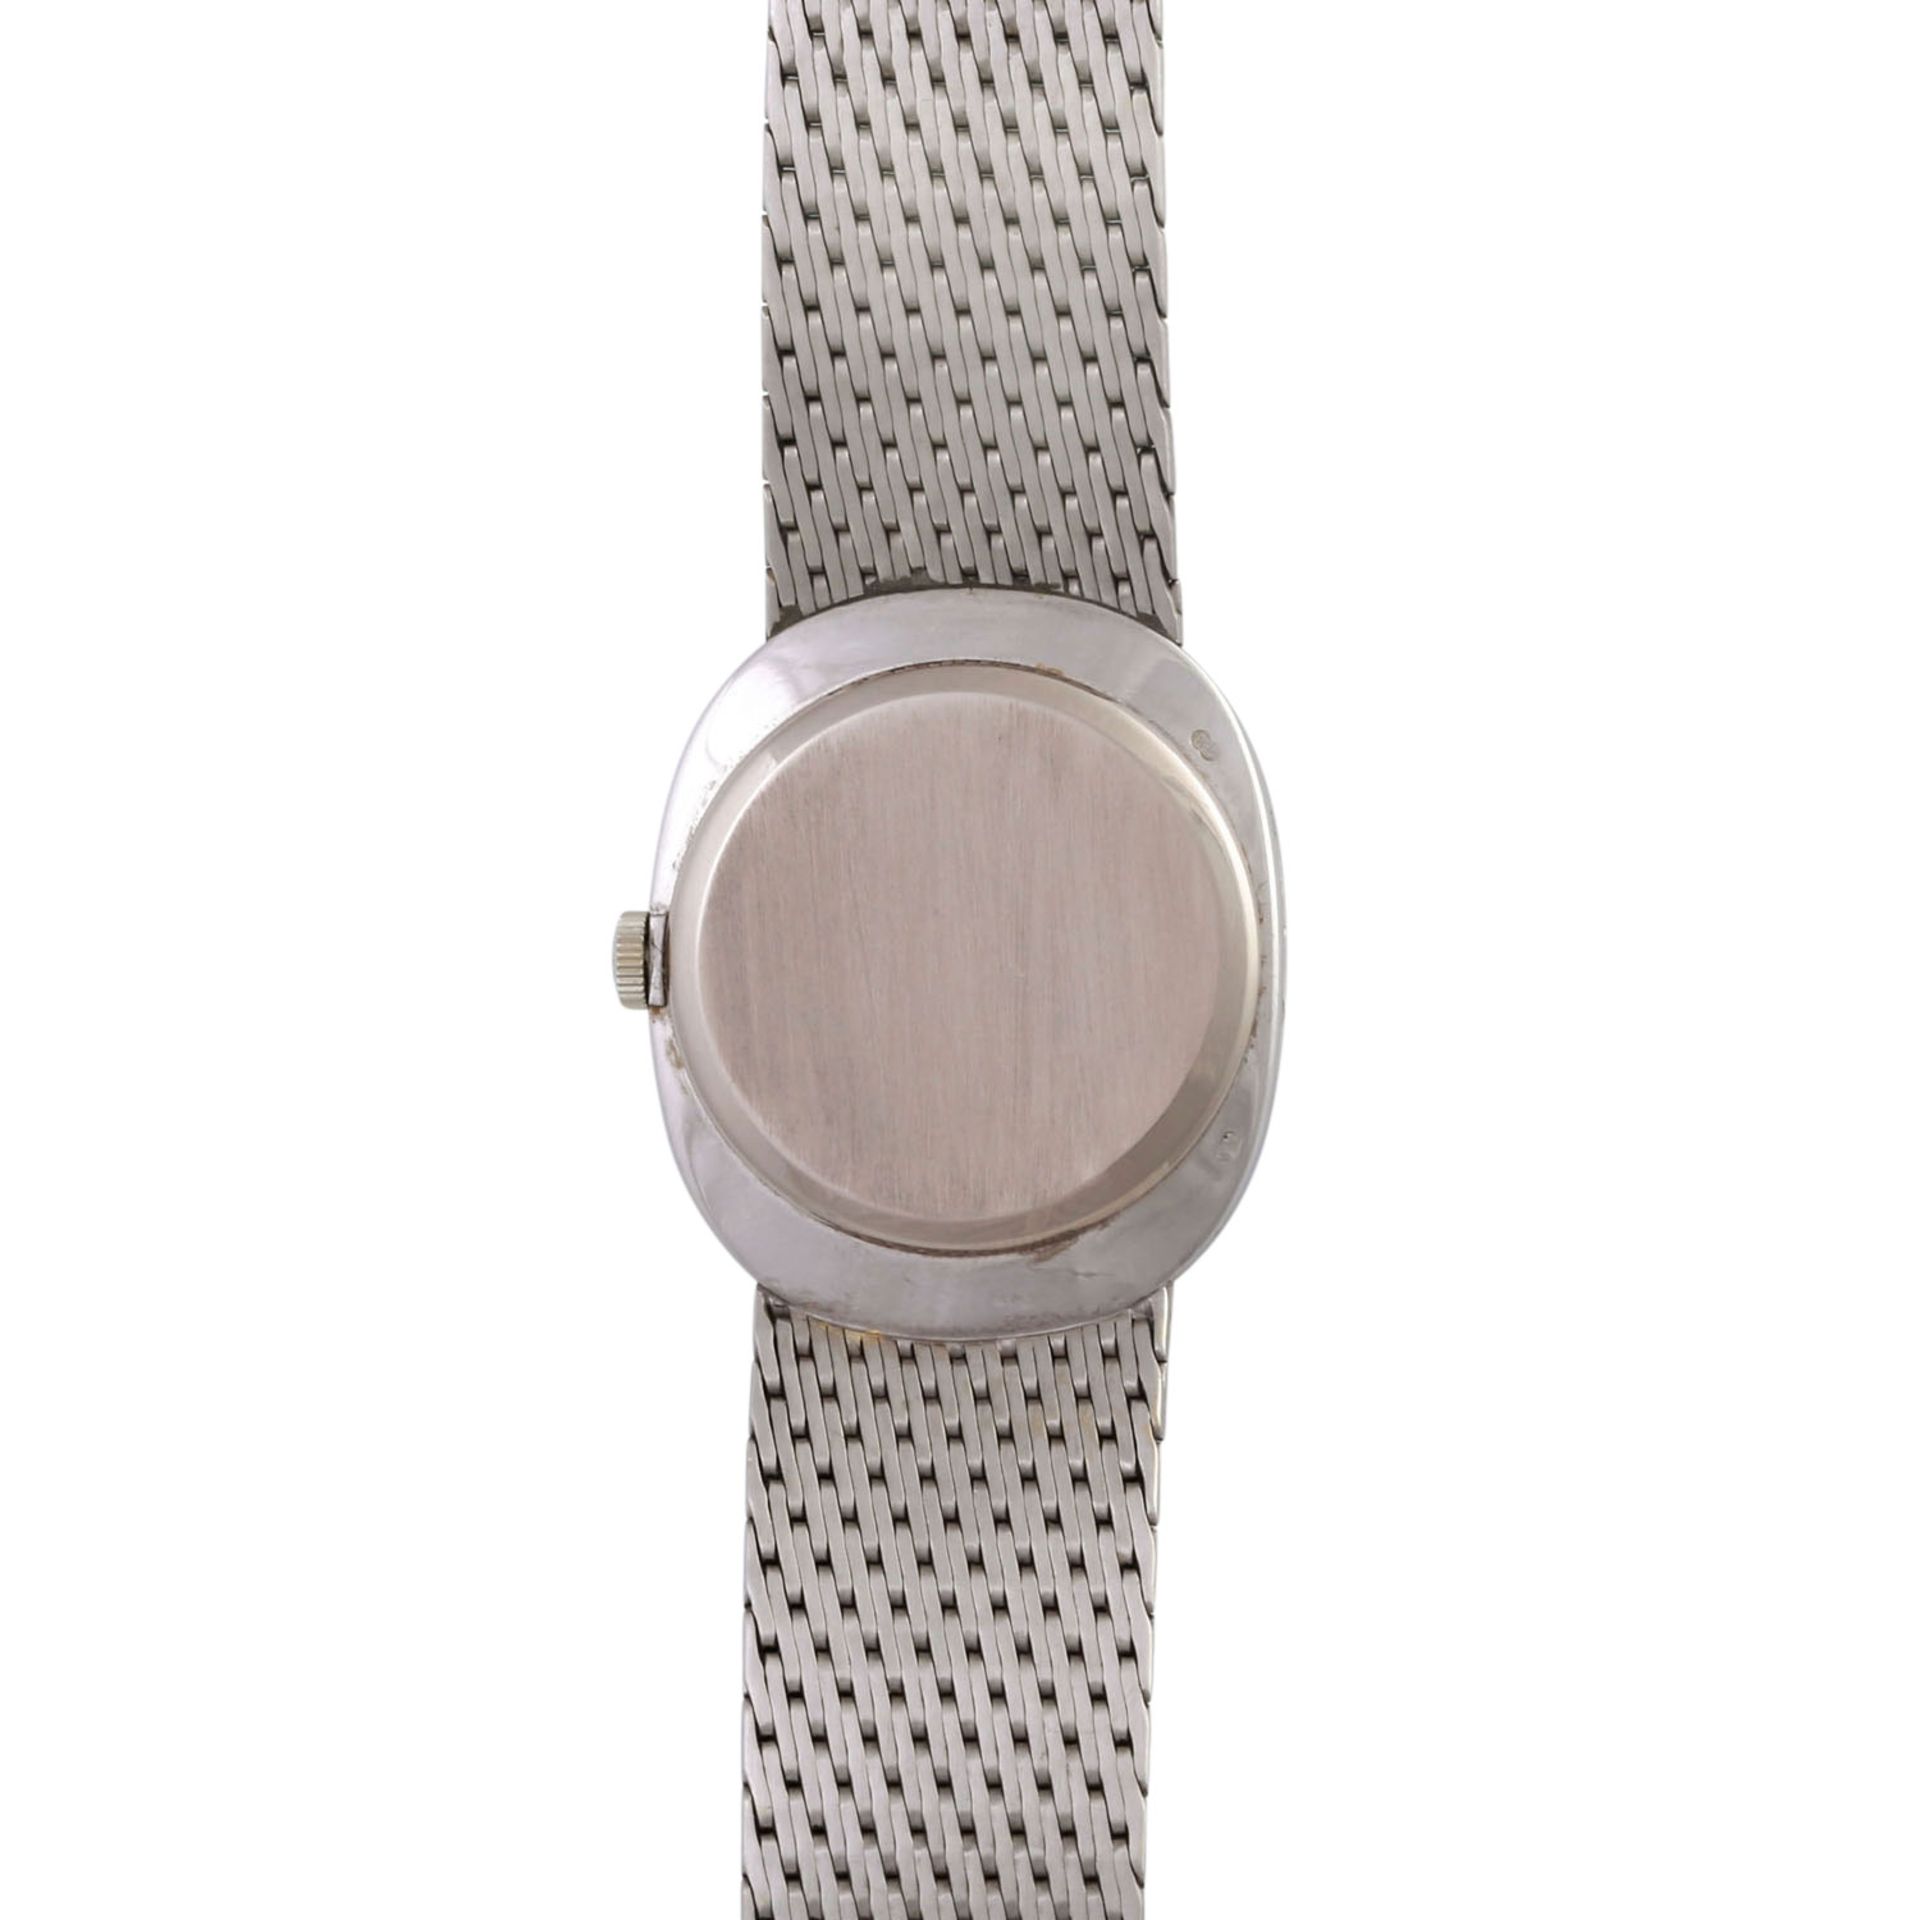 PATEK PHILIPPE Ellipse D'or Vintage Armbanduhr, Ref. 3748/1, ca. 1960/70er Jahre.Weißgold 18K. - Bild 2 aus 7